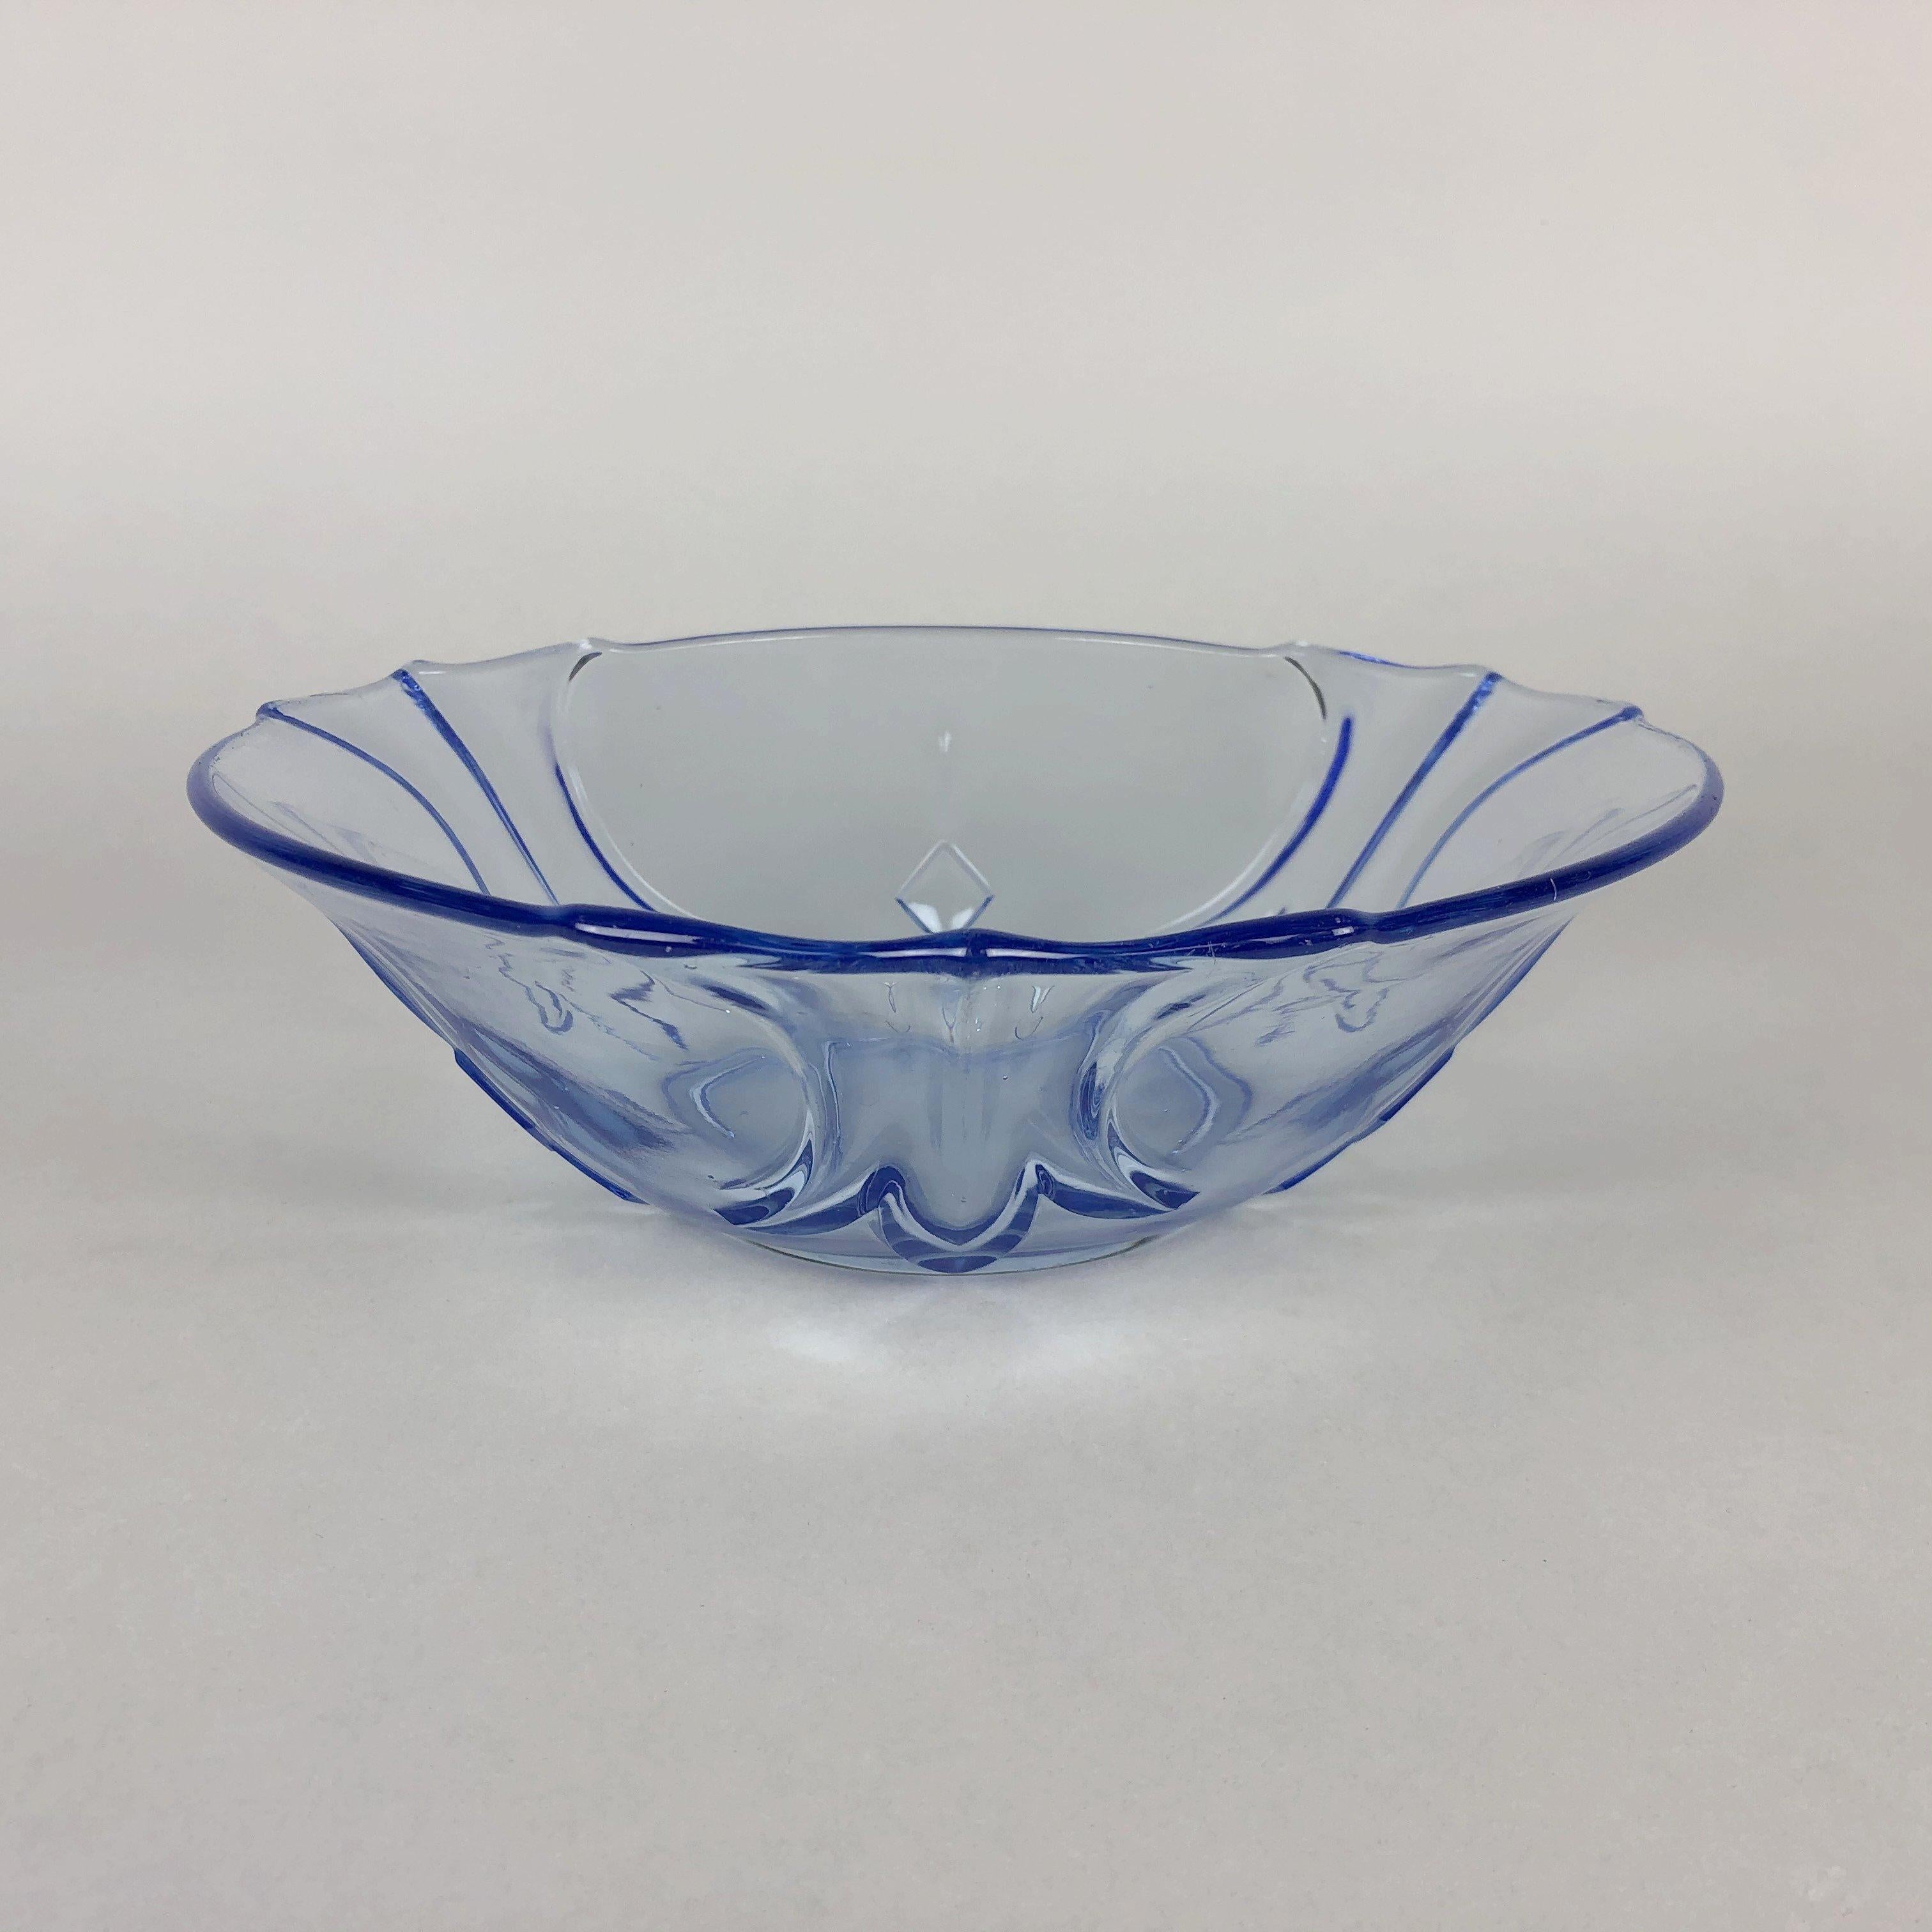 Hübsche blaue transparente Vintage-Glasschale. Die Schale ist etwa 8 cm (3.15 inch) groß und 24,5 cm (9.65 inch) breit.